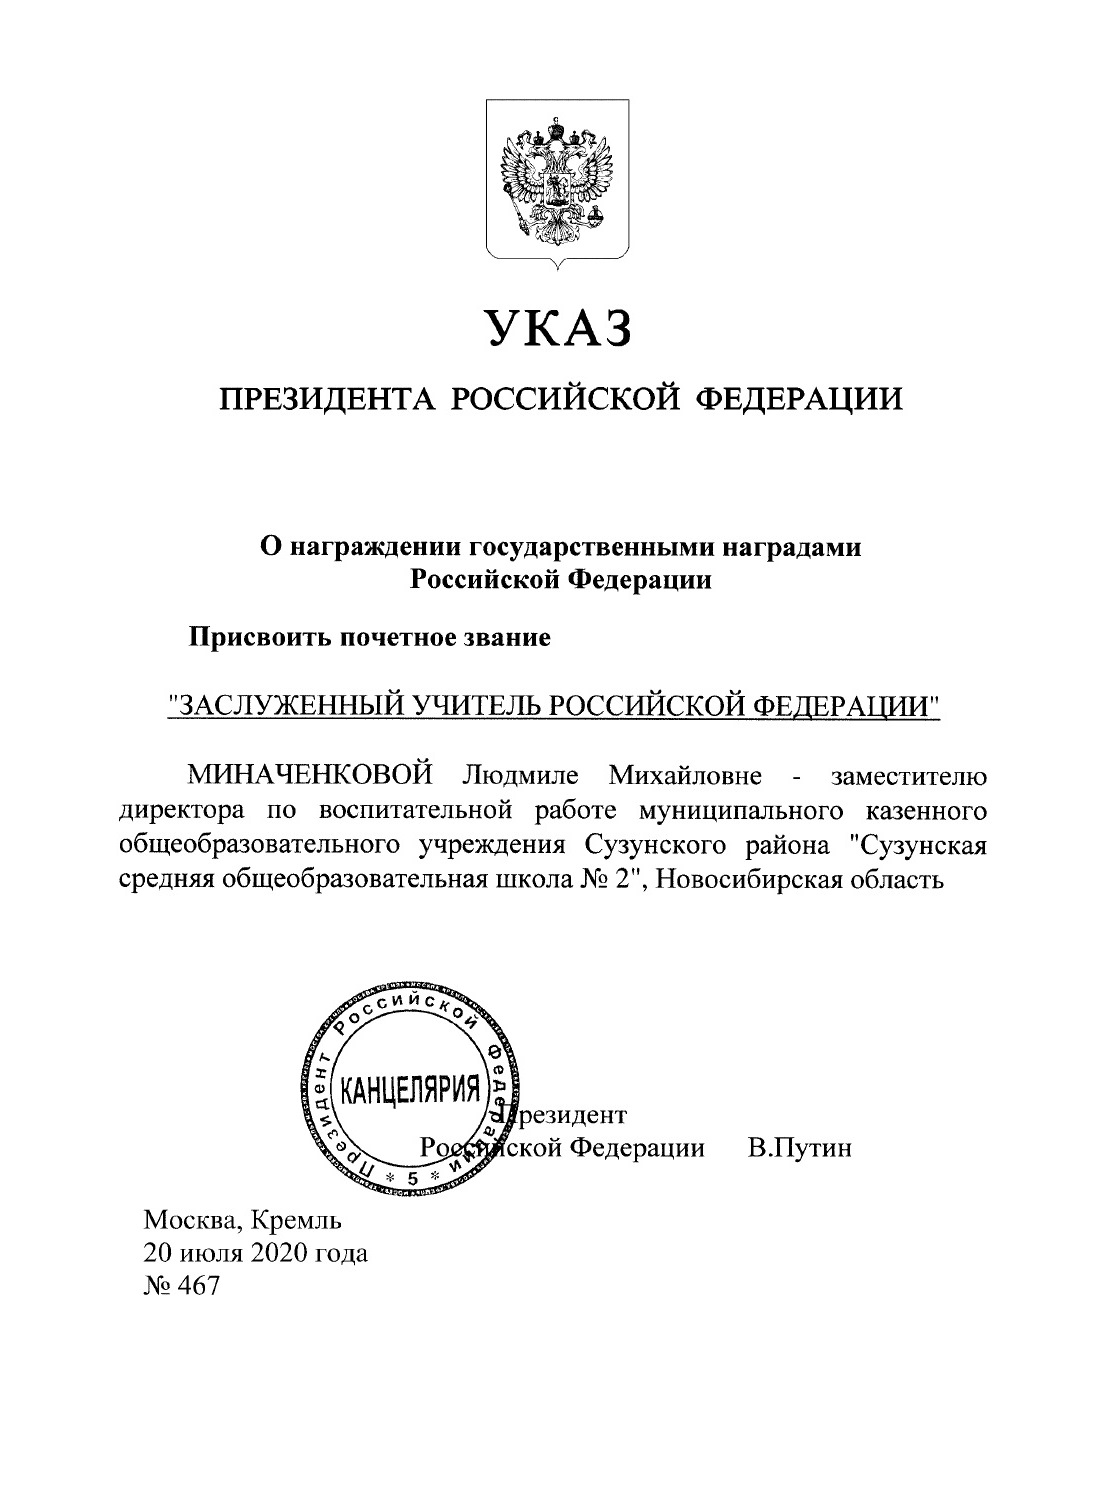 Указ Перезидента о награждении Миначенковой Л.М..jpg